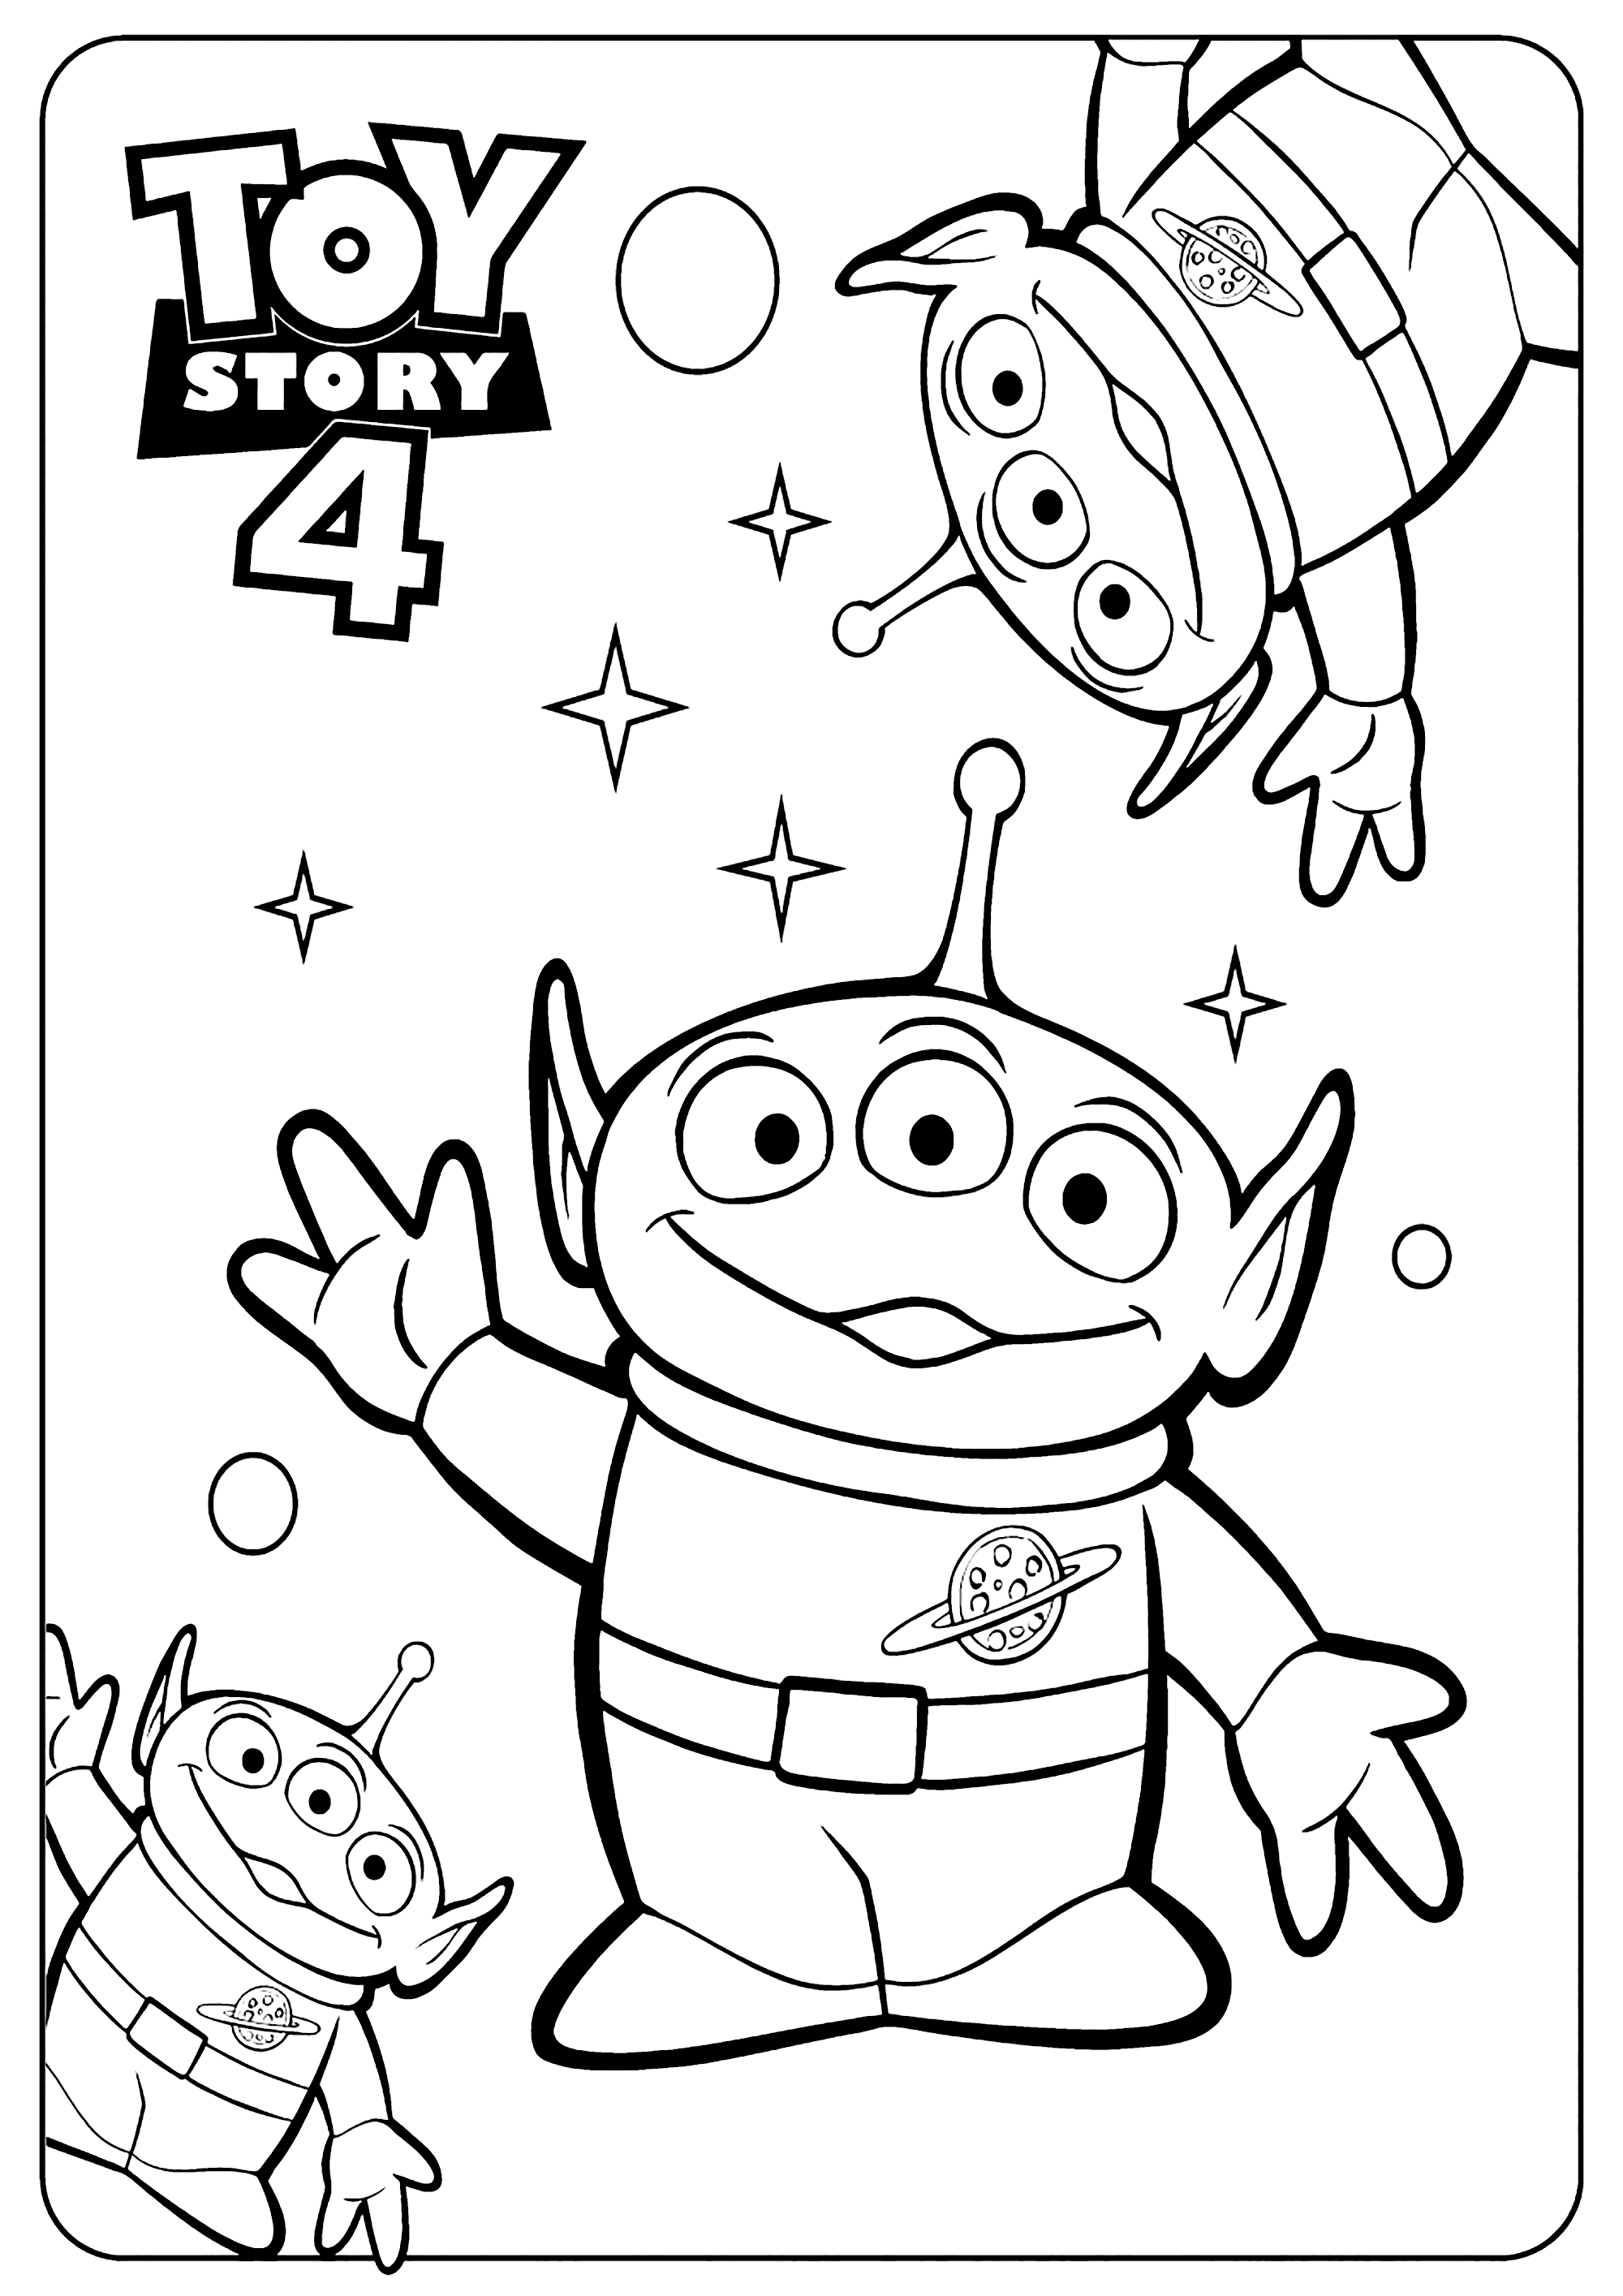 Dibujos para colorear de Toy Story 4: Aliens